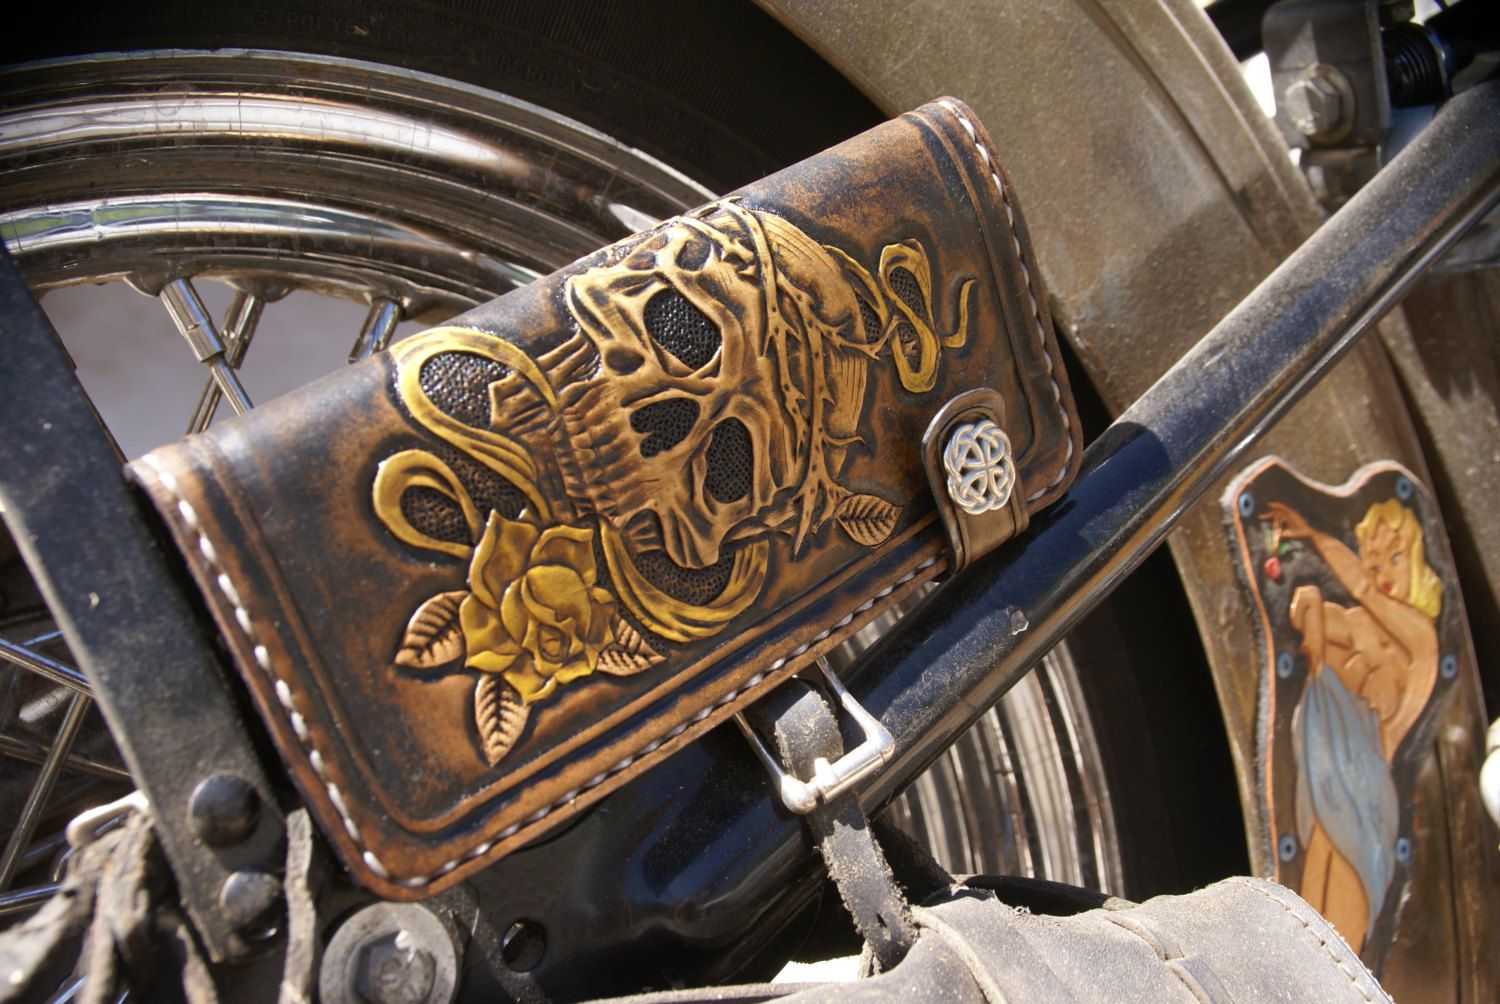 Buy a Handmade Chain Wallet (Biker Wallet,Leather Wallet,Trucker Wallet,Skull Wallet,Motorcycle ...